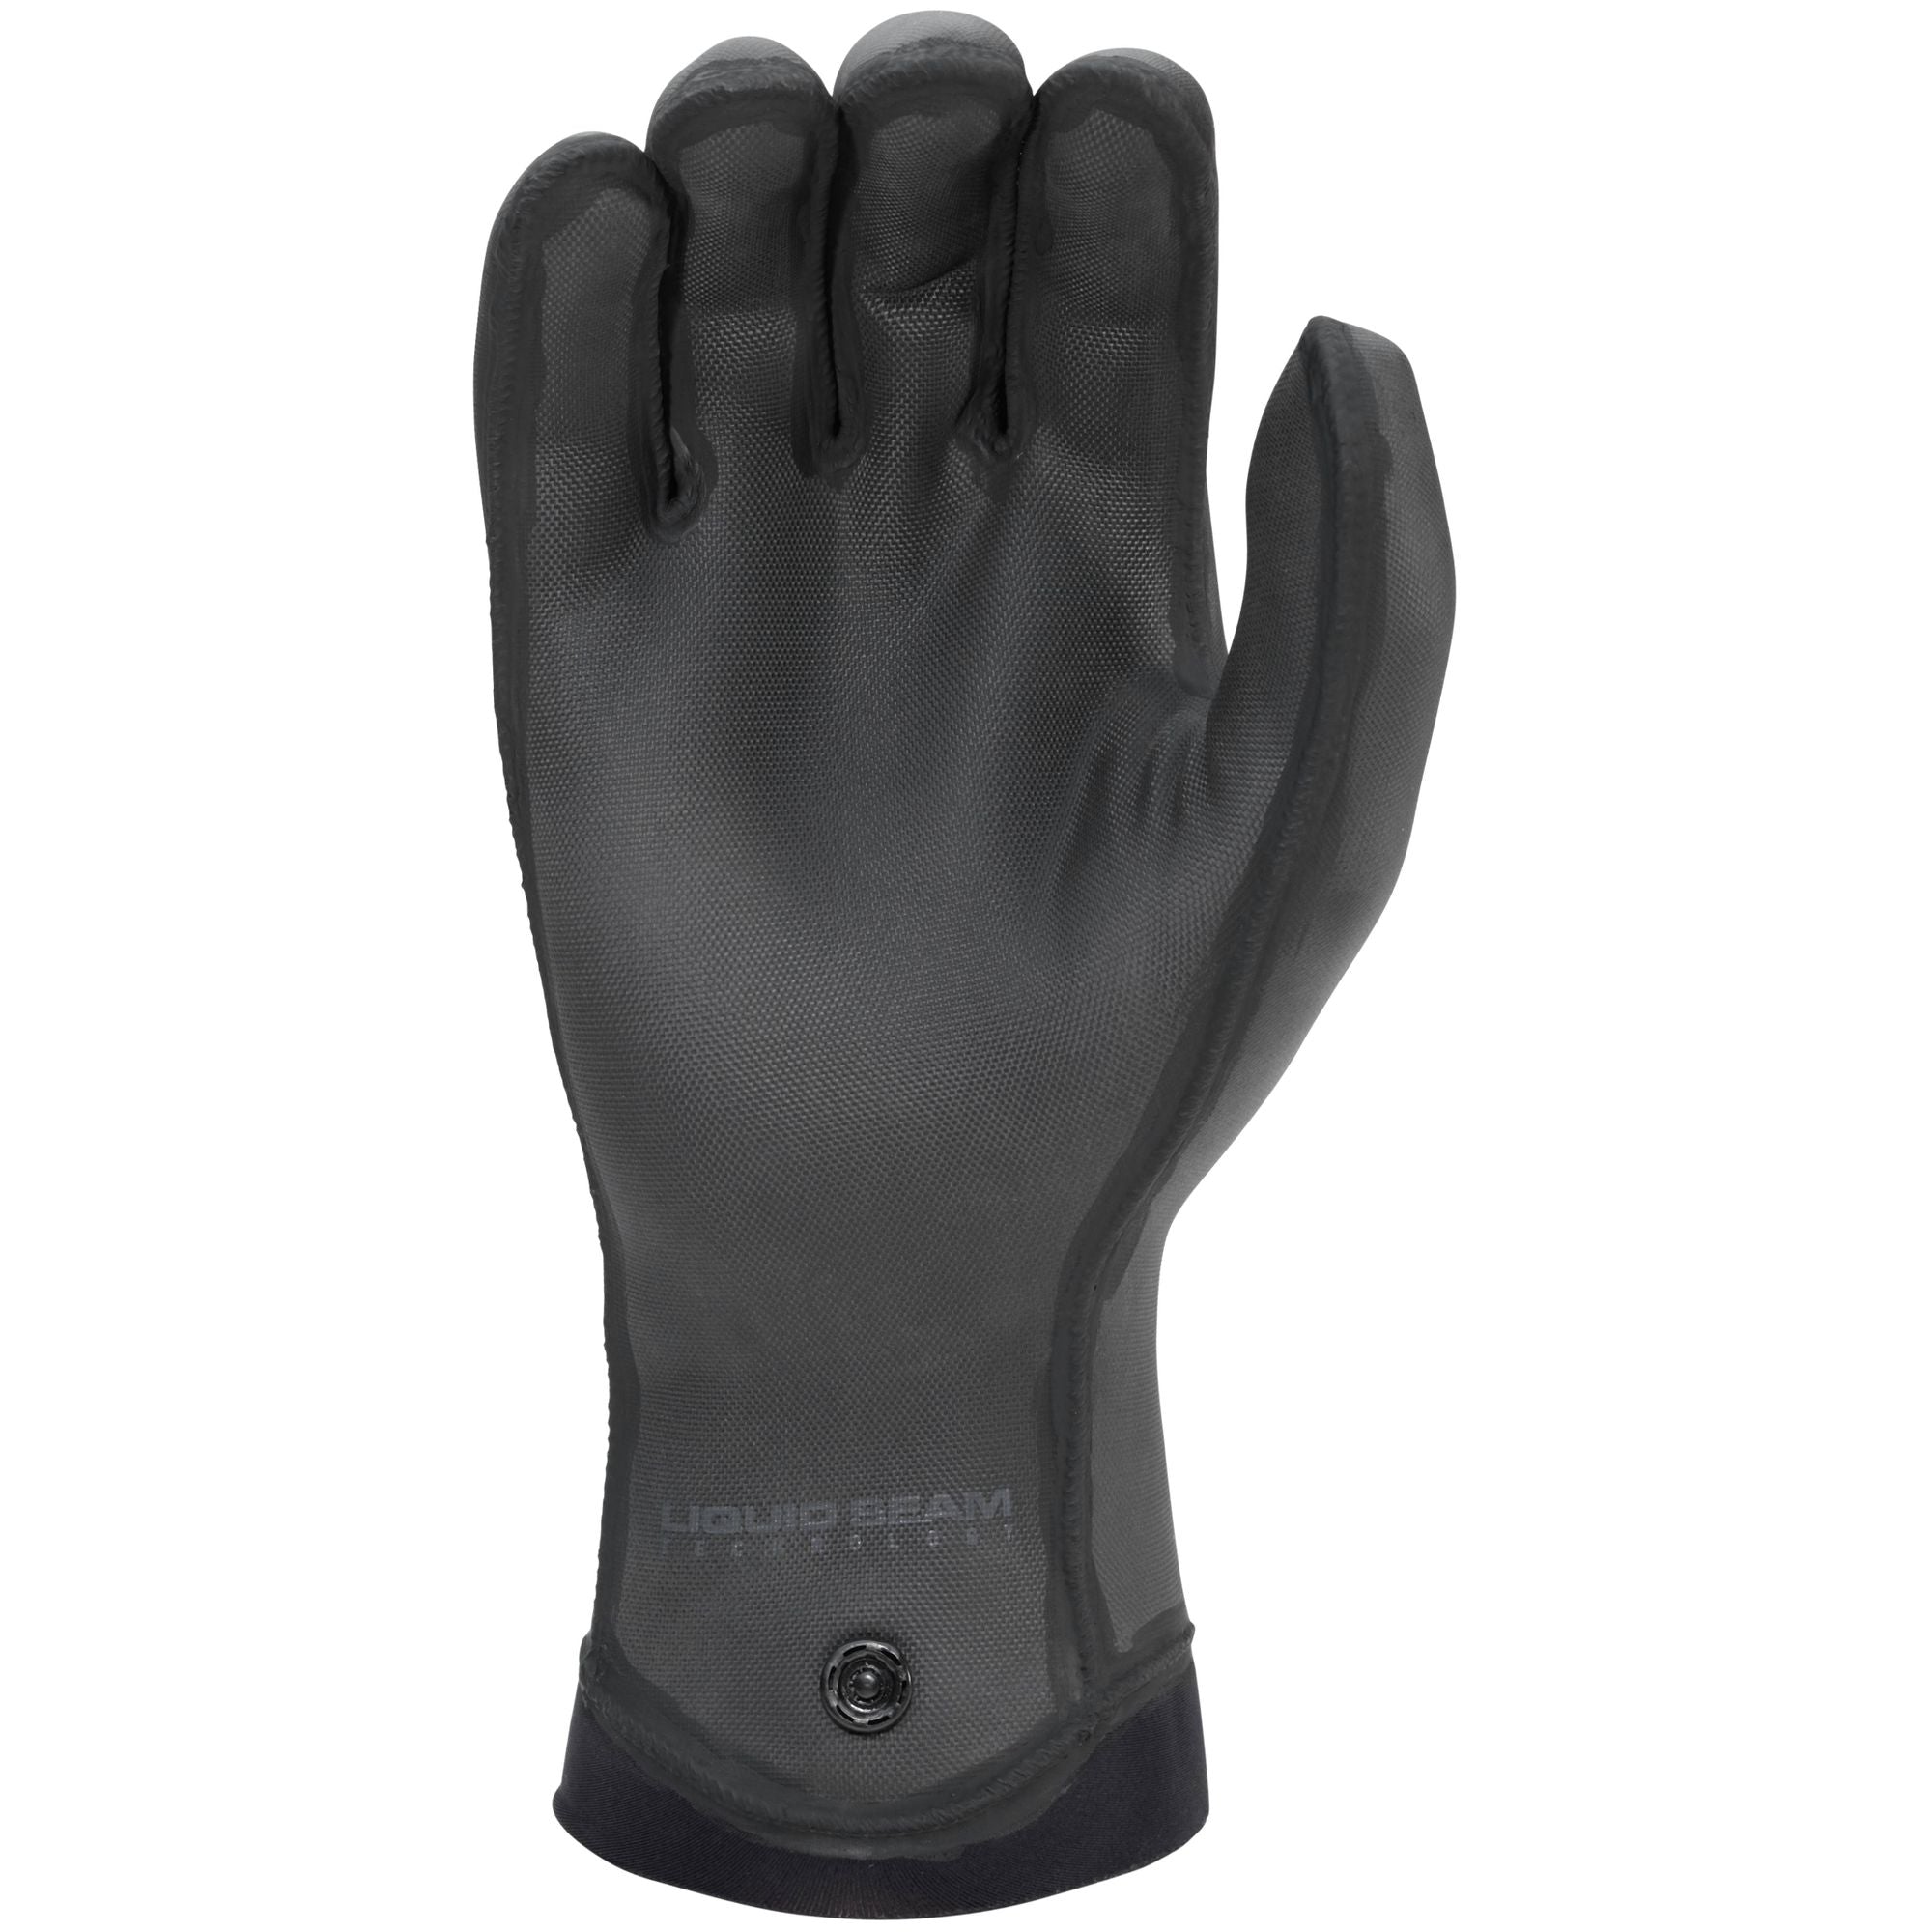 NRS - Maverick Gloves (Past Season)